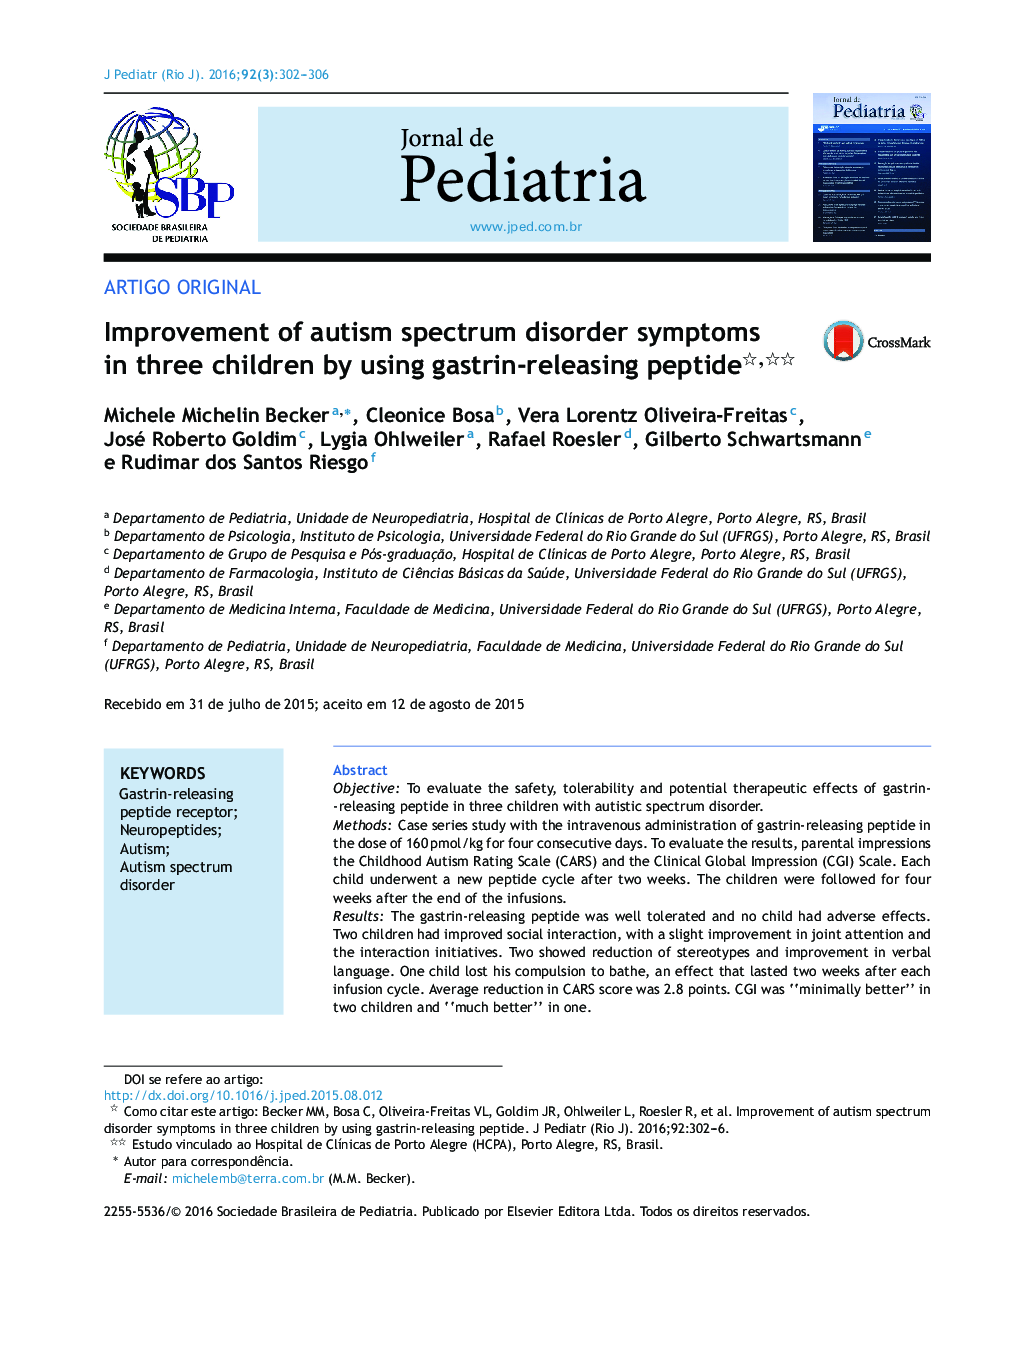 بهبود علائم اختلال طیف اوتیسم در سه کودک با استفاده از پپتید آزاد شده از گاسترینا 